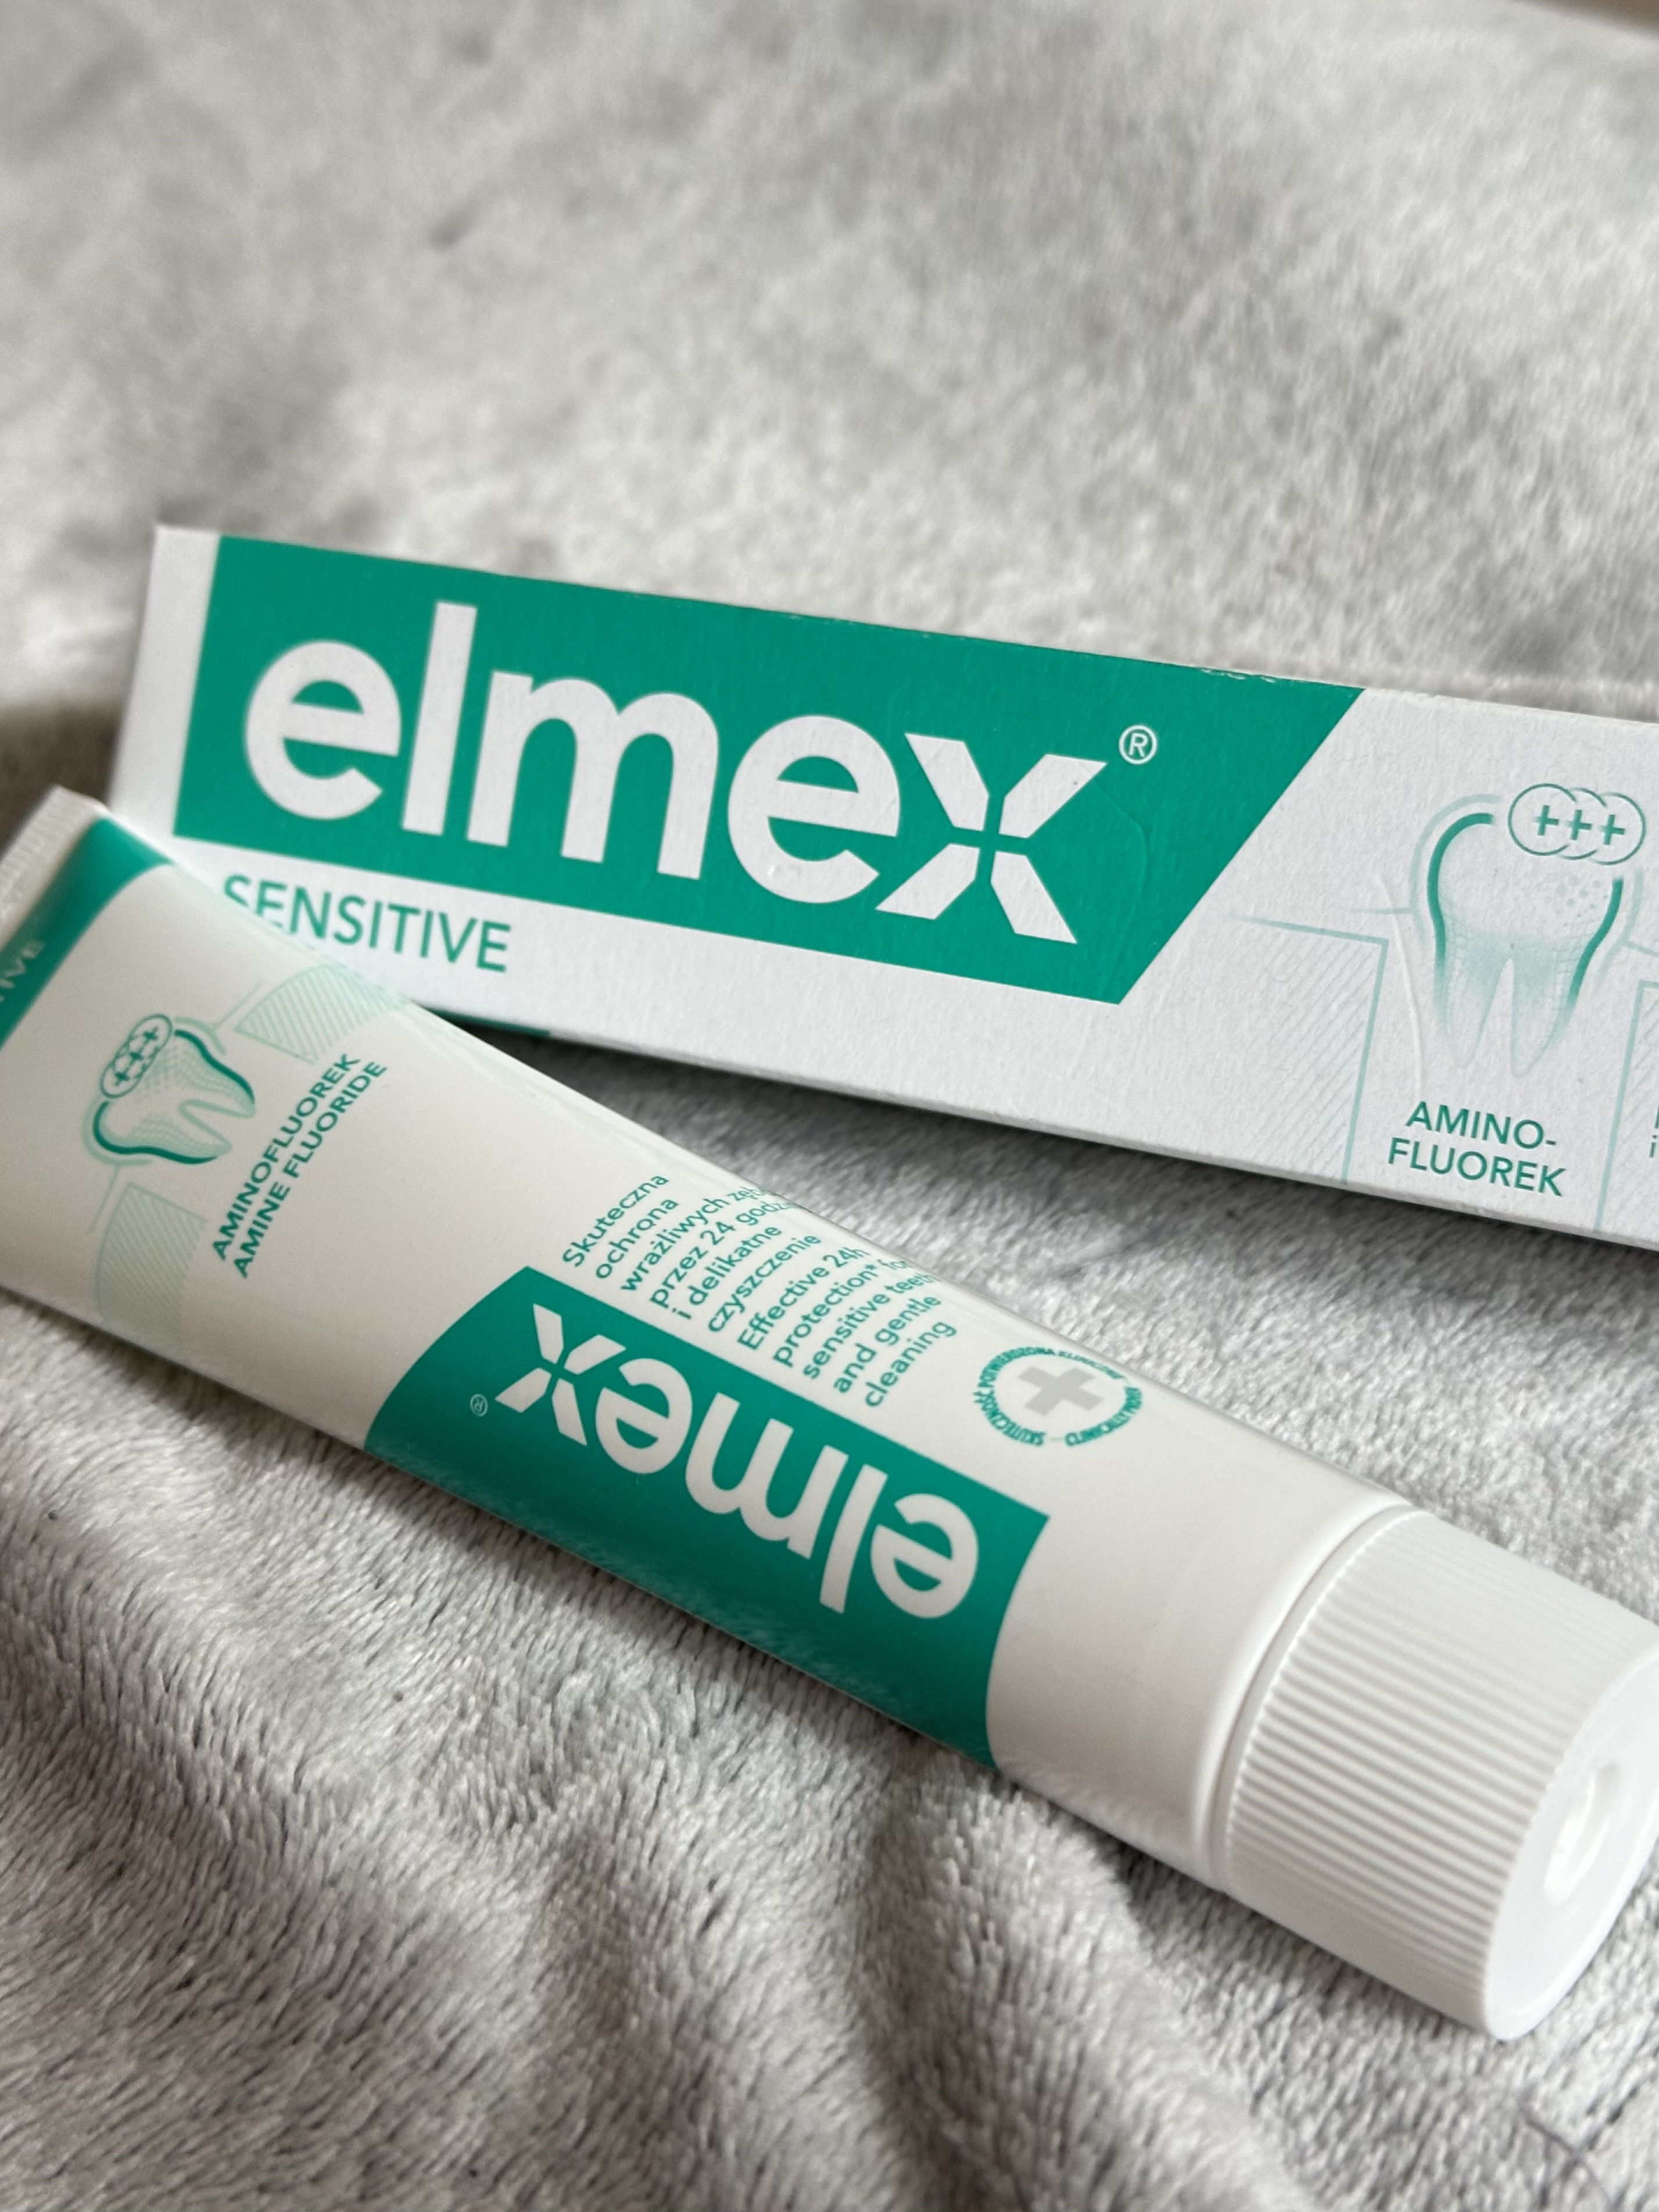 Зубна паста "Elmex" для чутливих зубів з амінофт�оридом